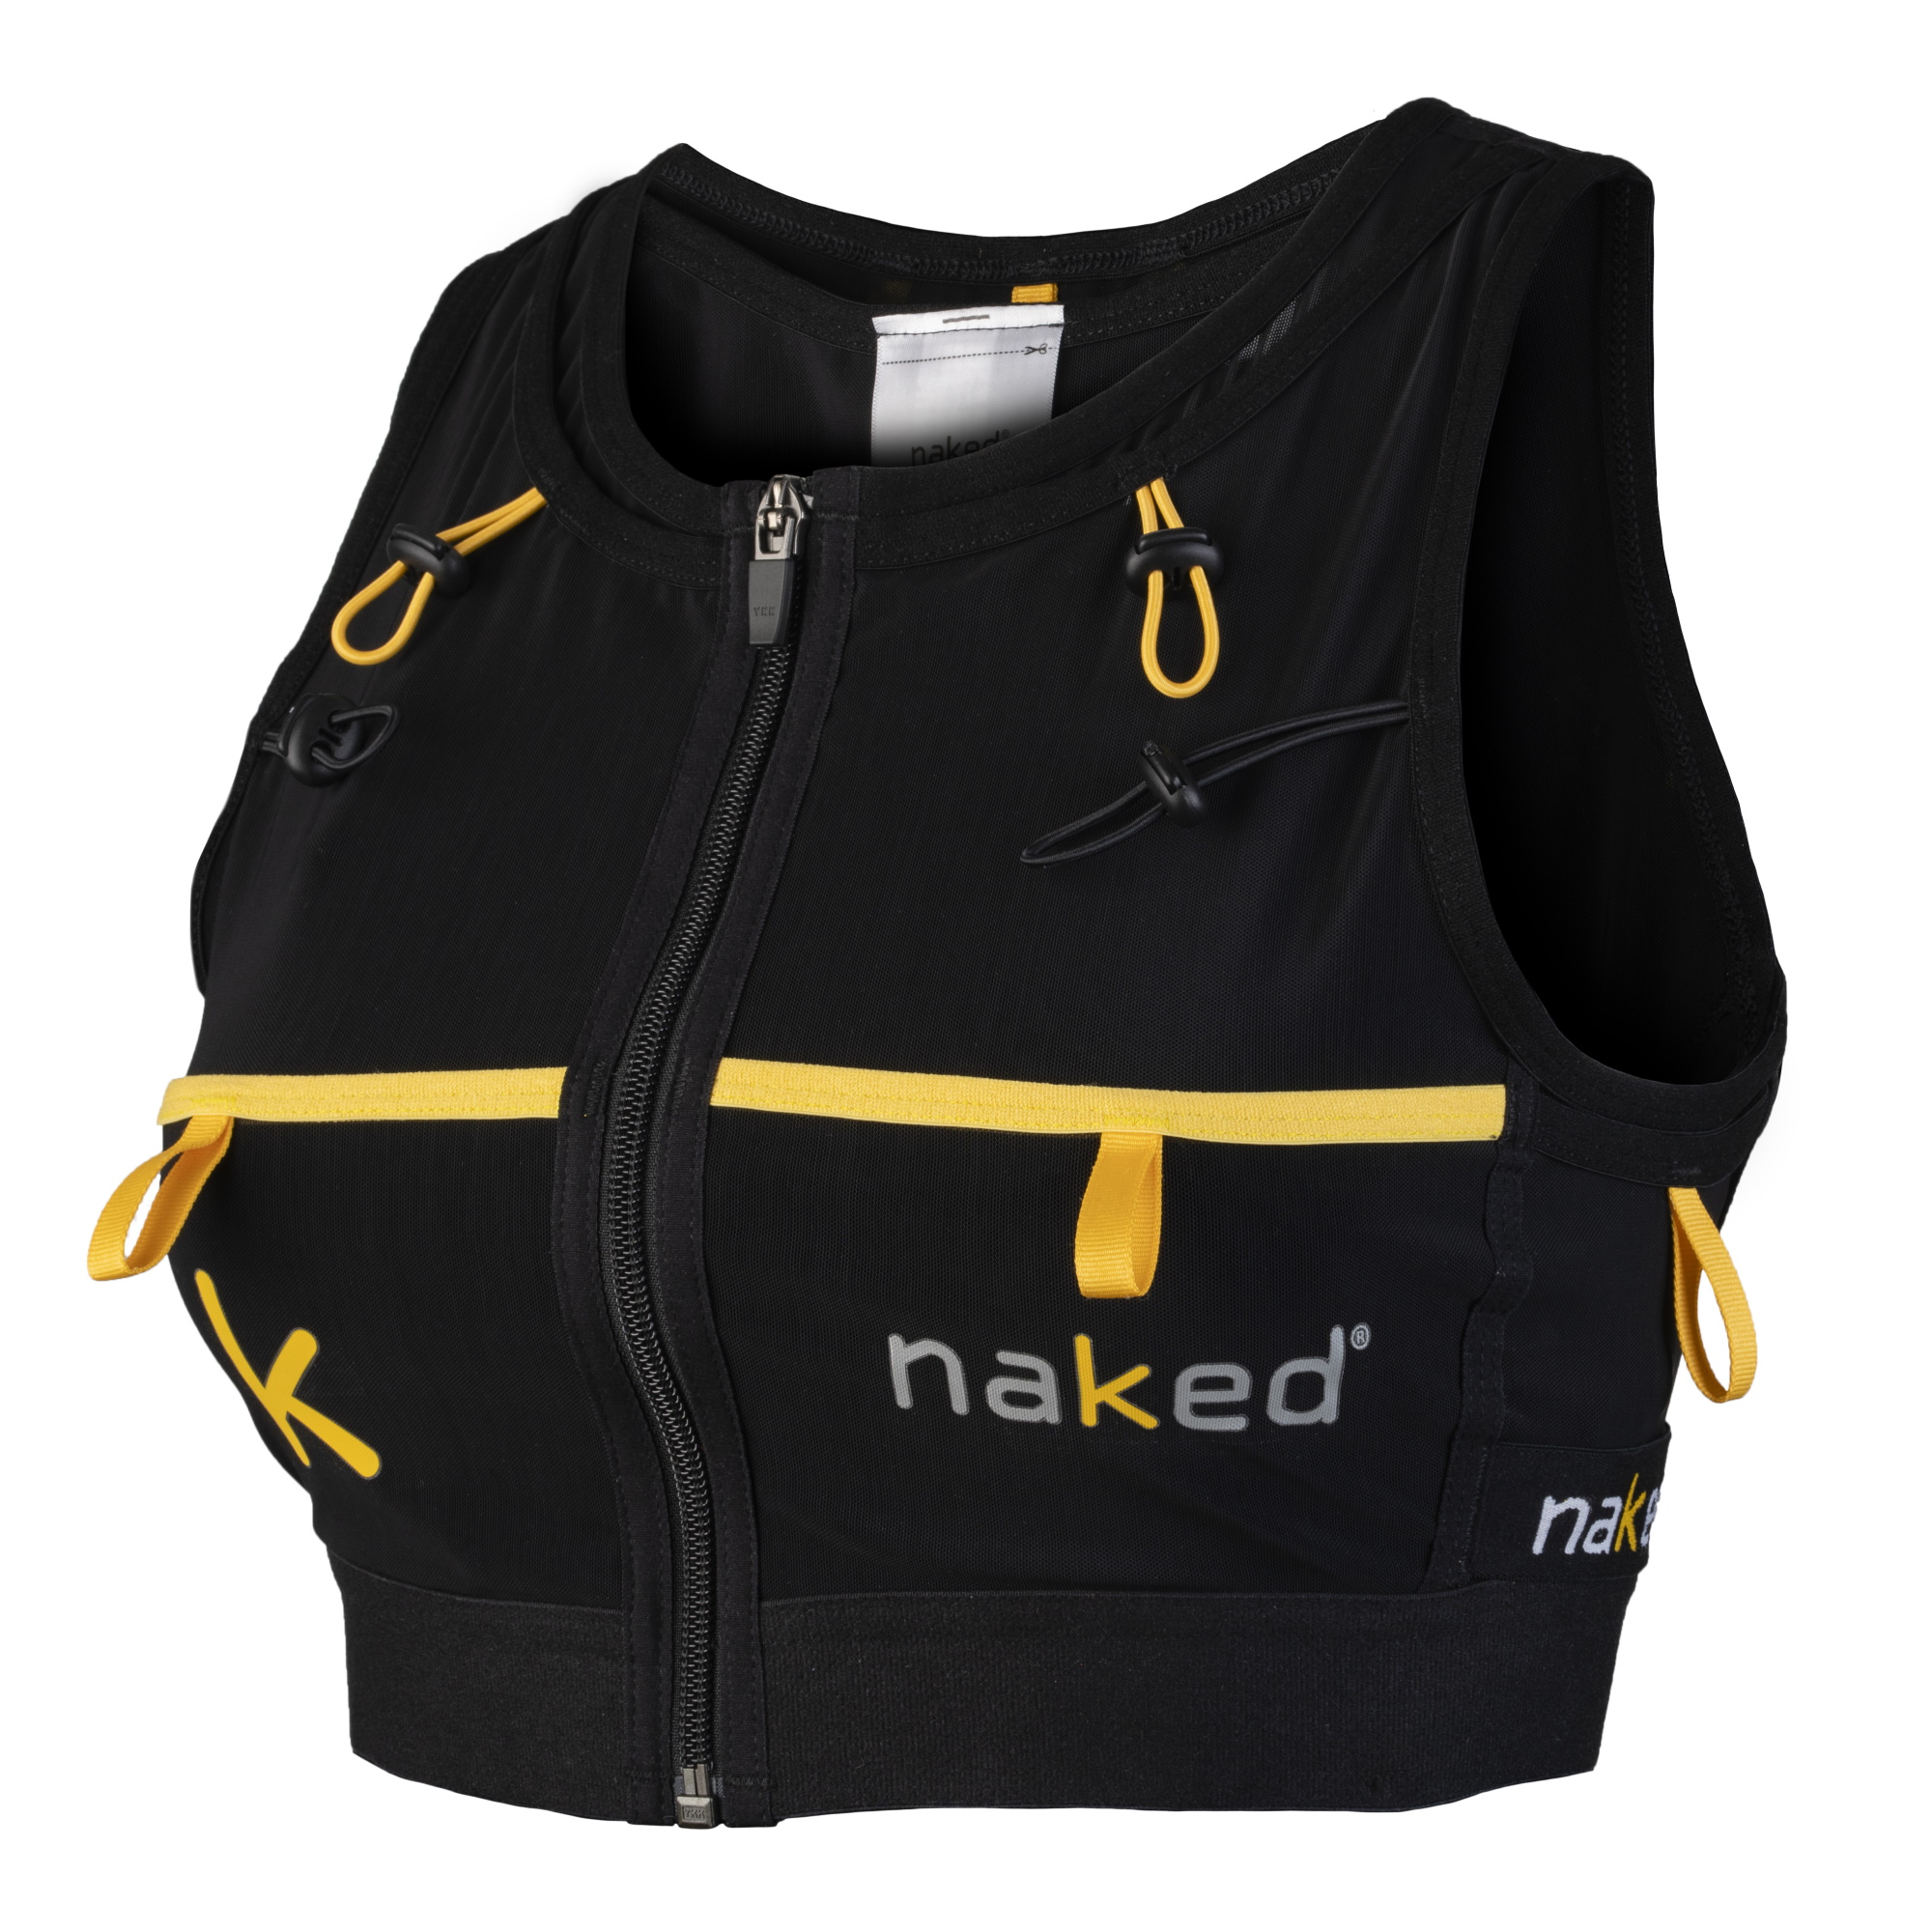 Naked Running 2L Waist Pack Black